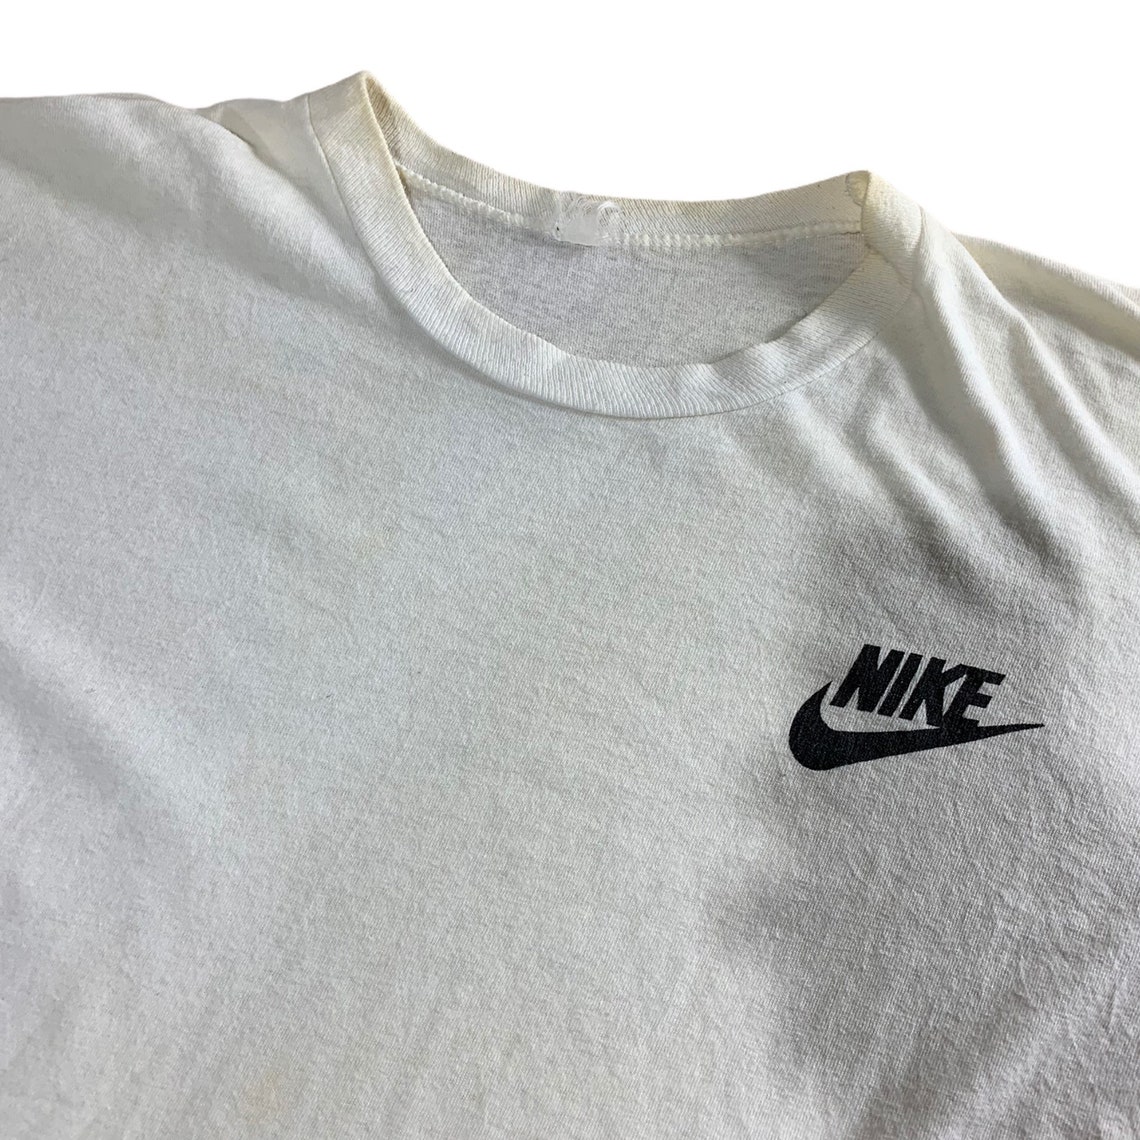 Vintage Nike Swoosh T-Shirt / Graphic / Streetwear Fashion & | Etsy